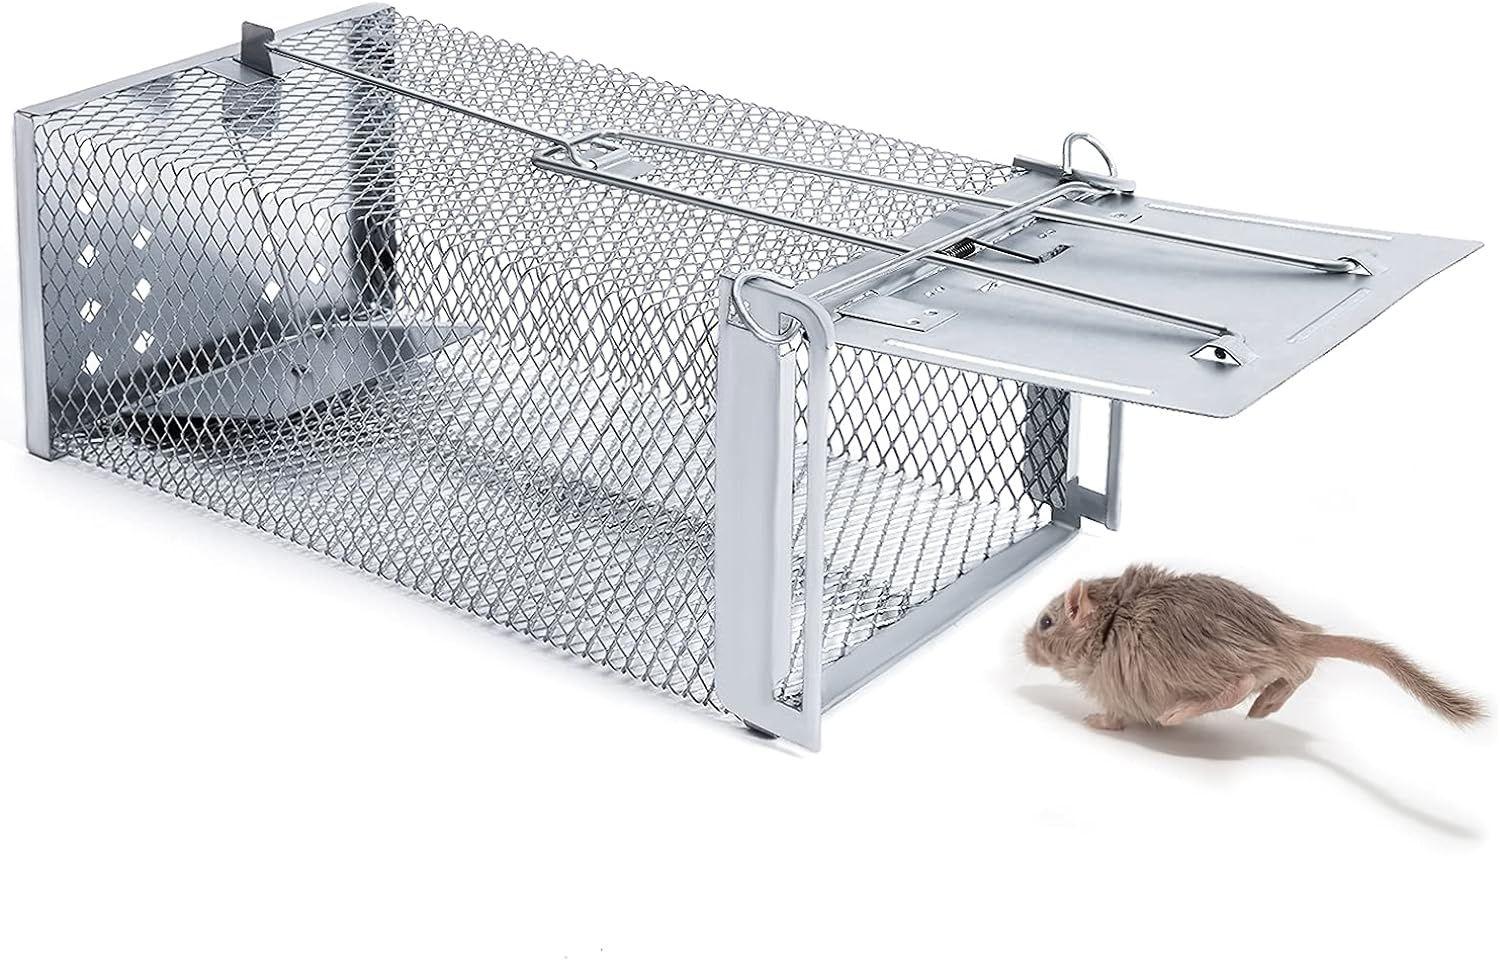 comment faire un piège à rat facile 🐁 15 souris piégées par nuit